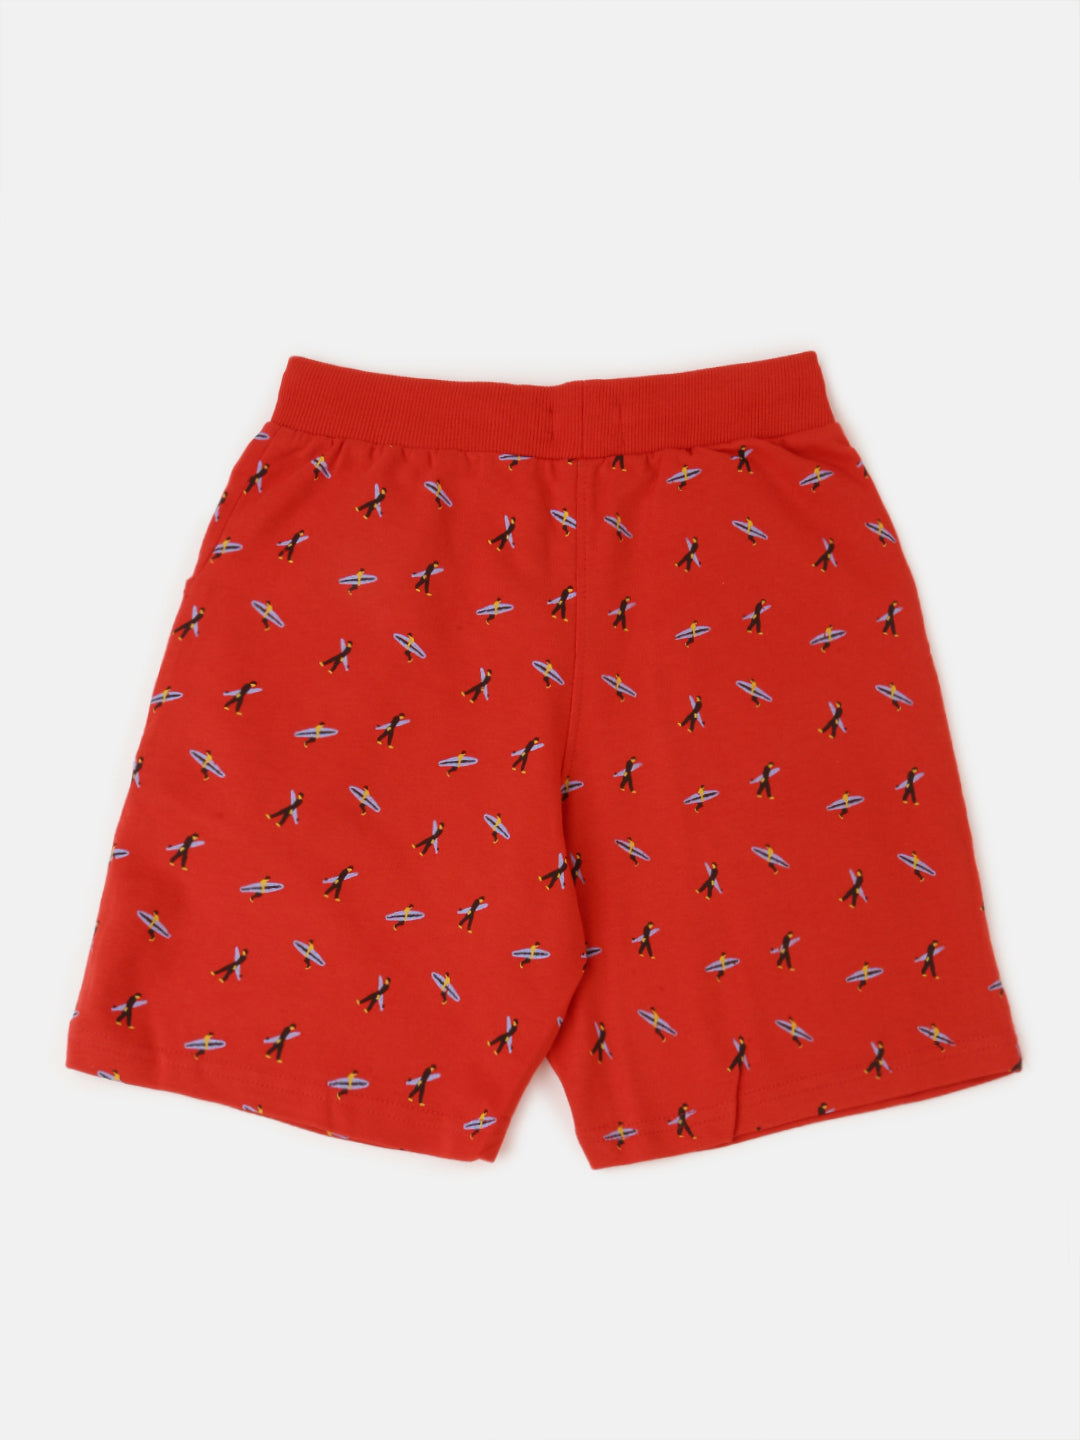 PIPIN Boys Printed Shorts Red